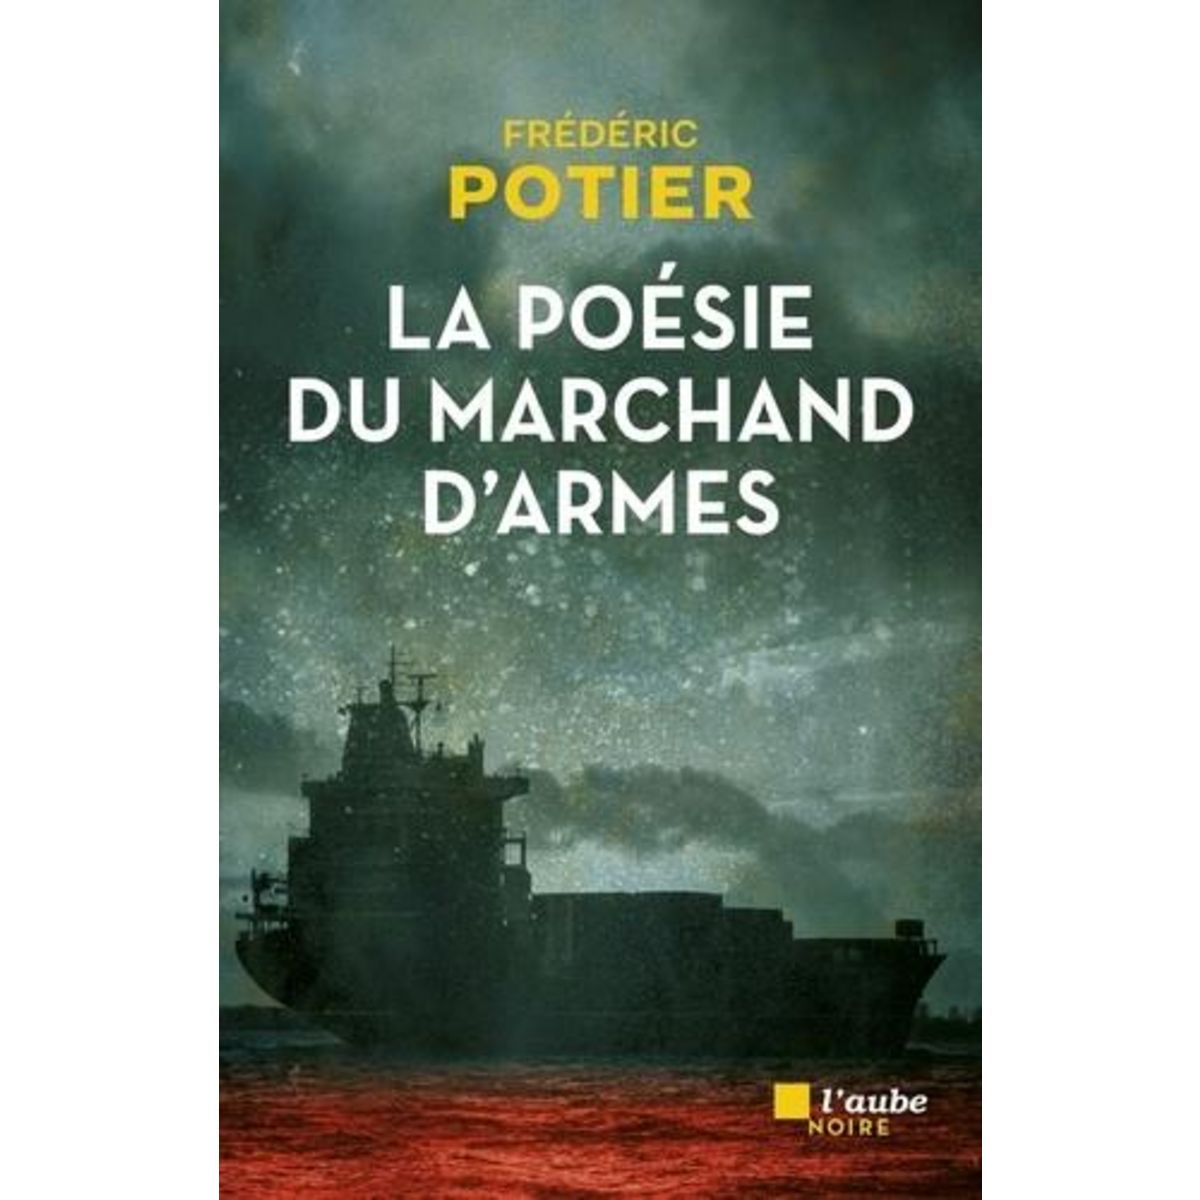  LA POESIE DU MARCHAND D'ARMES, Potier Frédéric